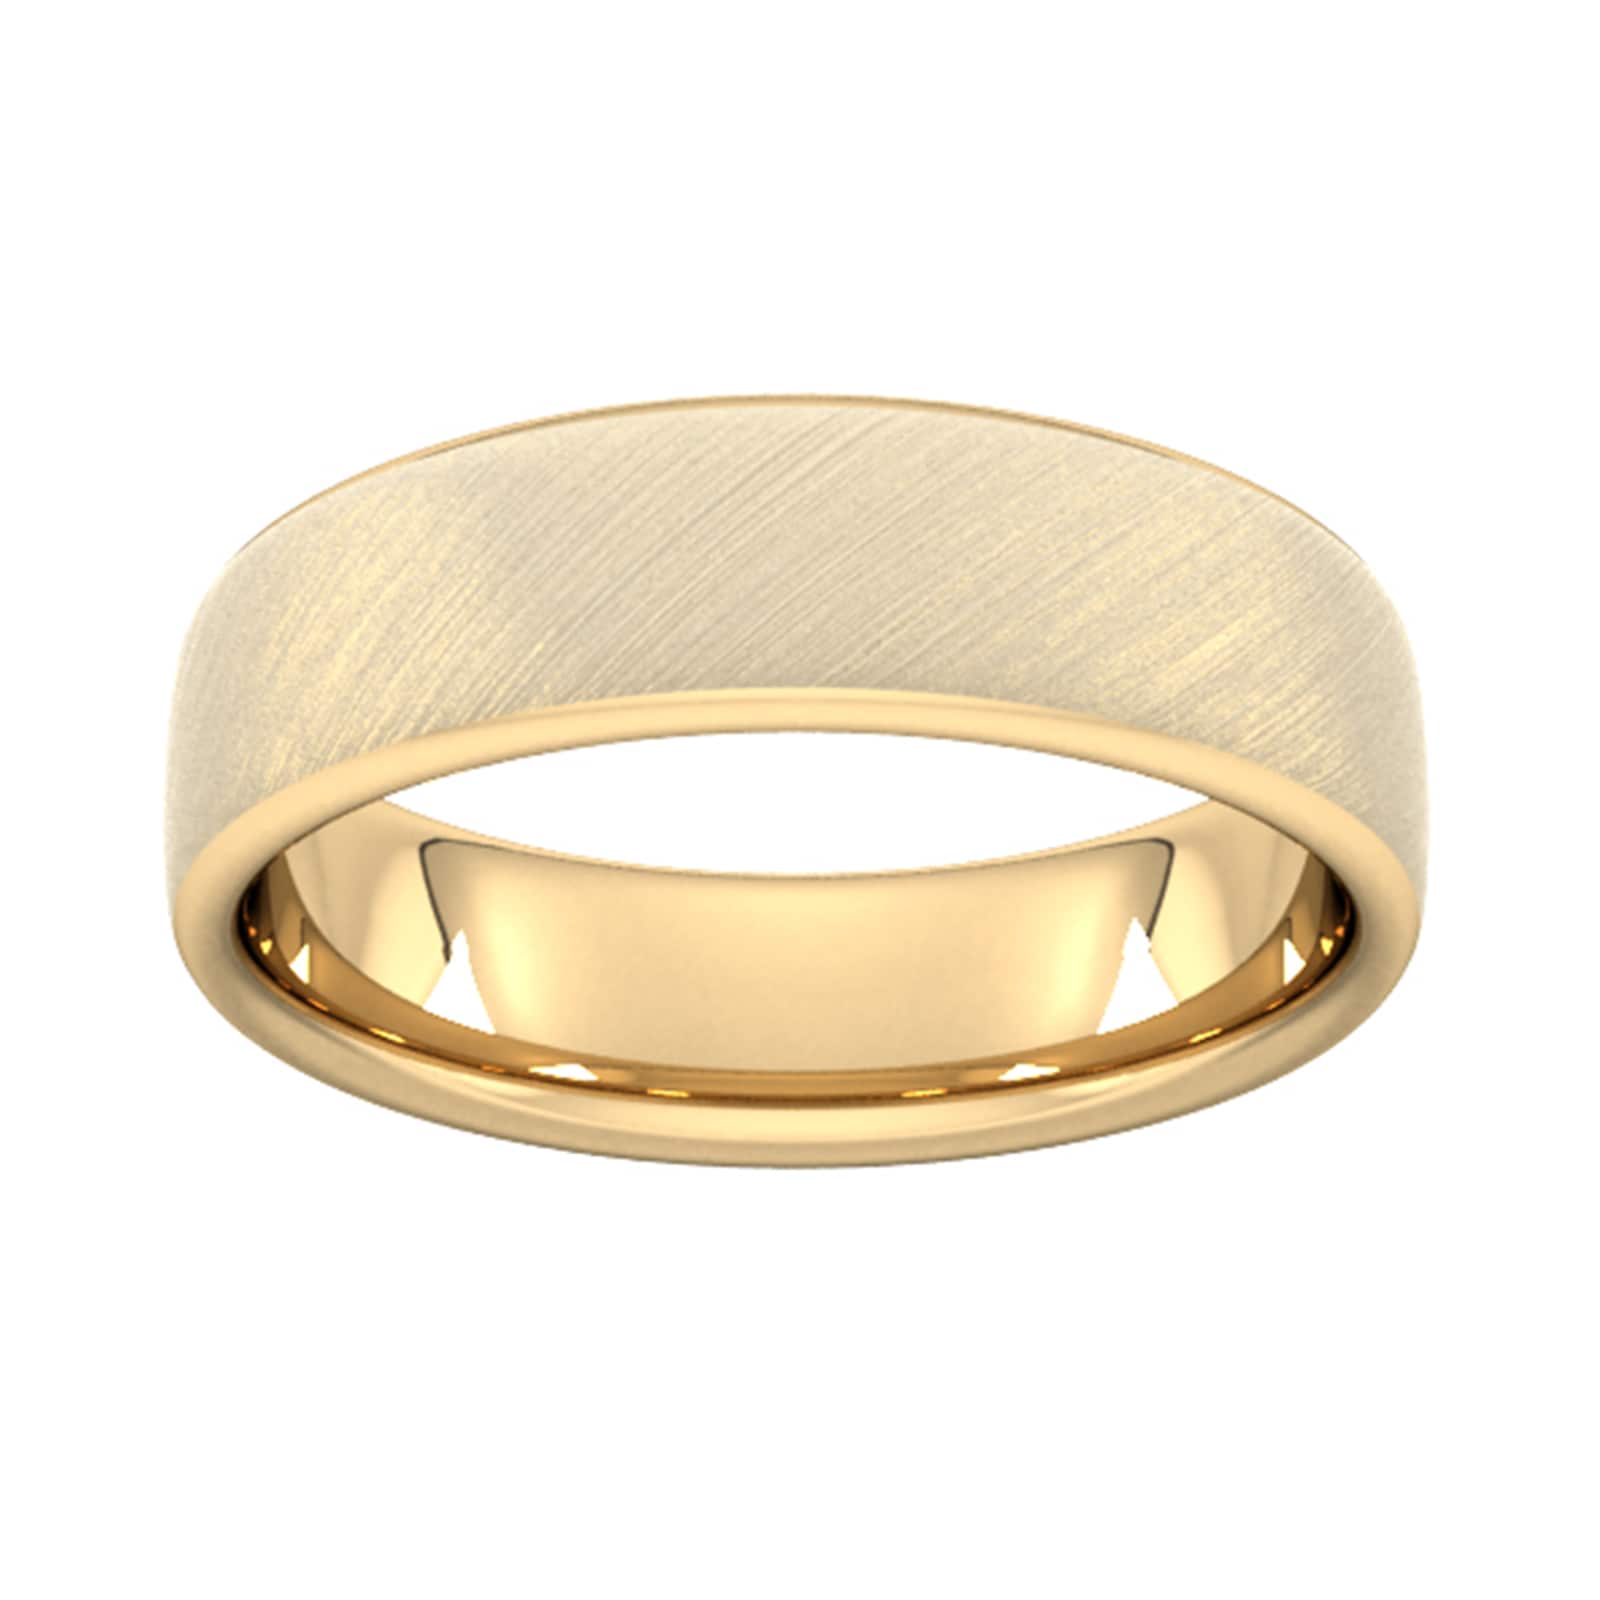 6mm D Shape Heavy Diagonal Matt Finish Wedding Ring In 18 Carat Yellow Gold - Ring Size Y